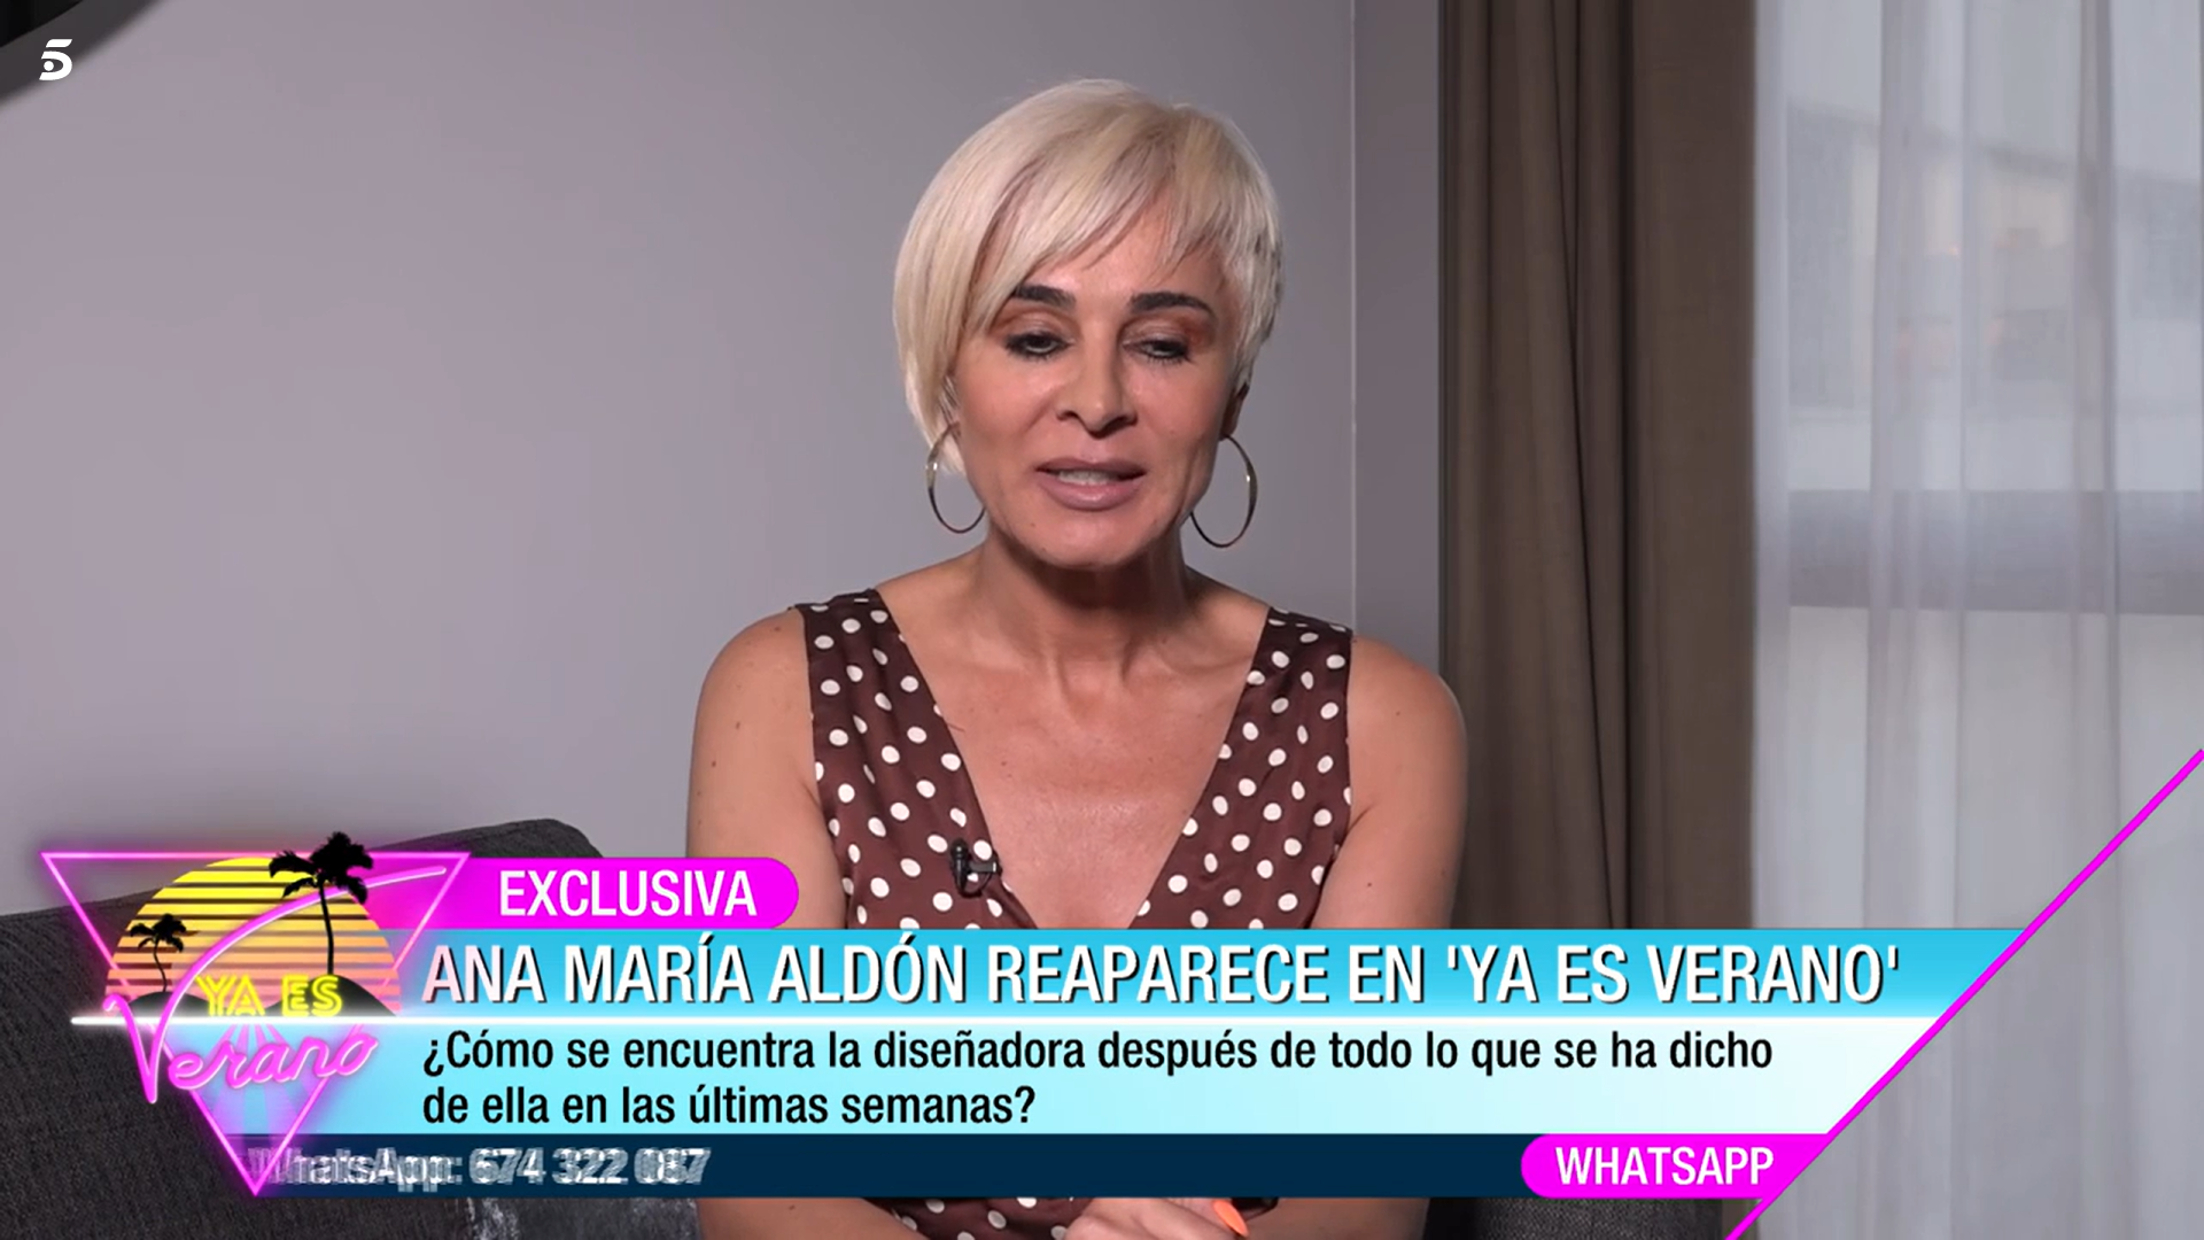 Ana María Aldón responderá a la pregunta más esperada sobre su relación.